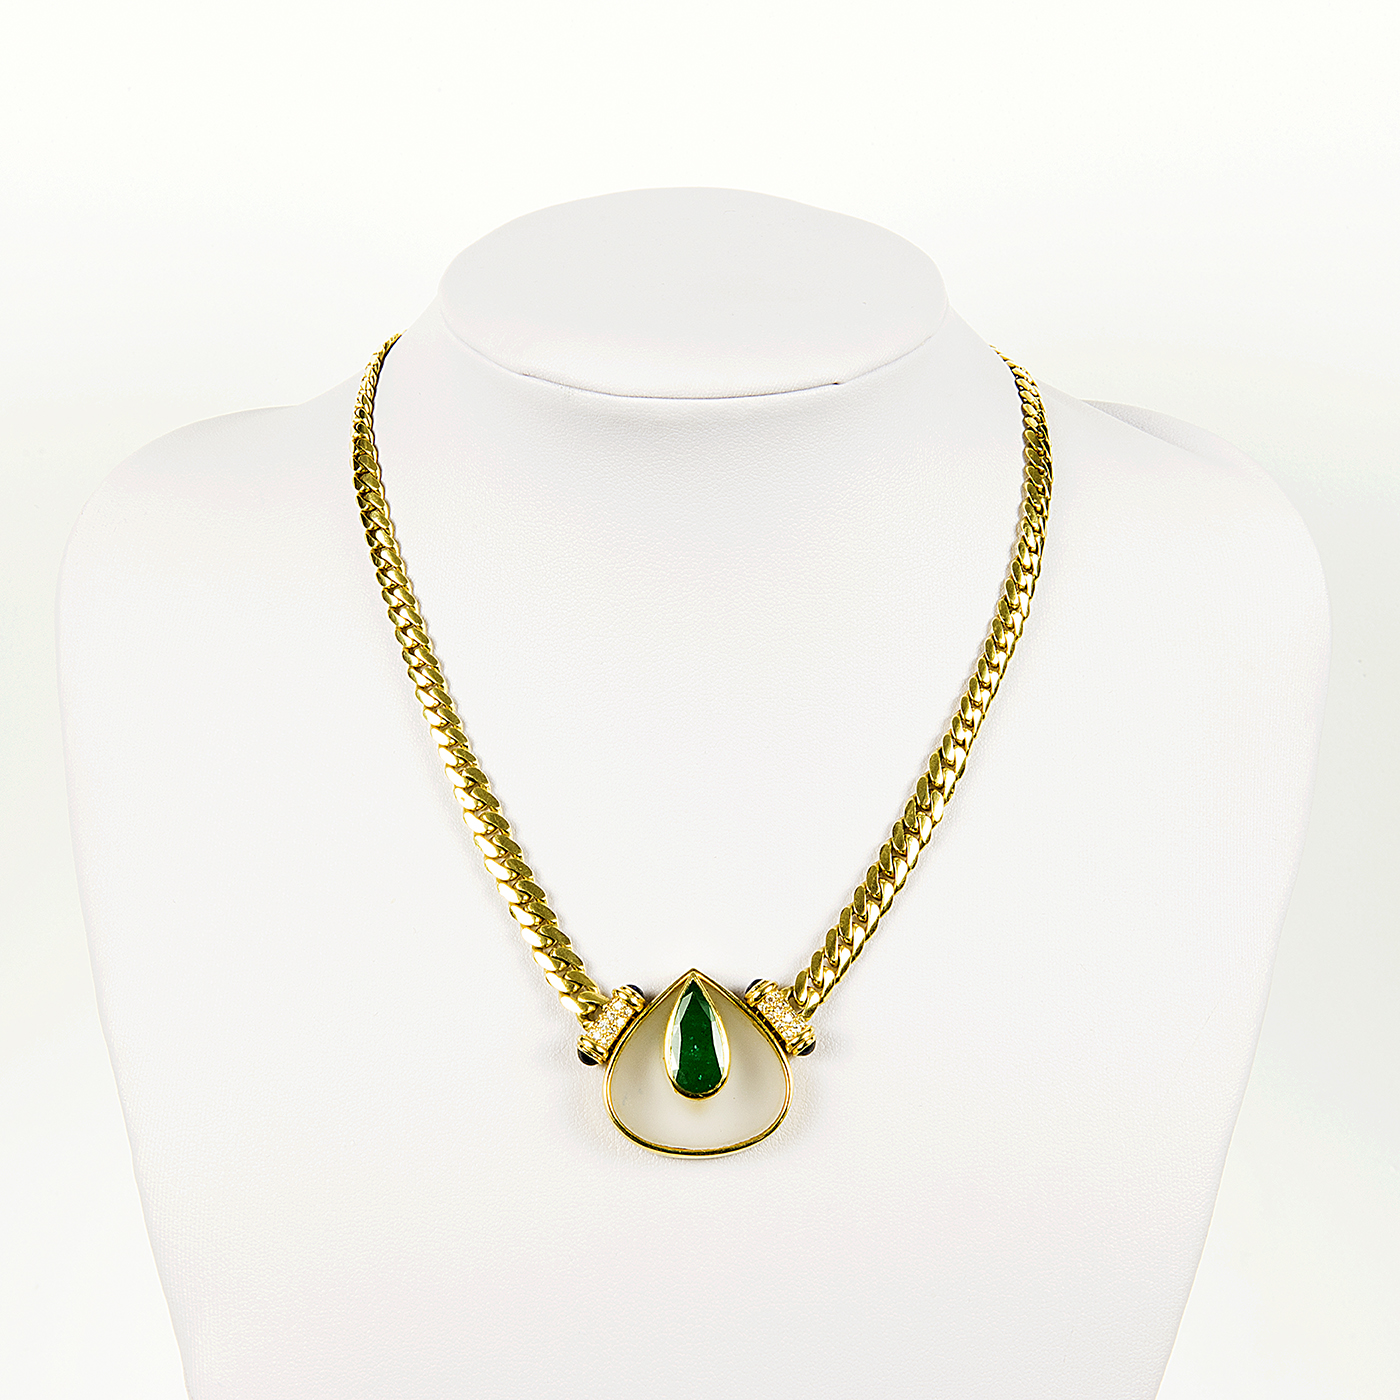 Collar en Oro de 18k y Colgante con Esmeralda de 4 ct. Talla pera, 24 Diamantes talla Brillante de 0,60 ct. y 4 Zafiros cabujón.